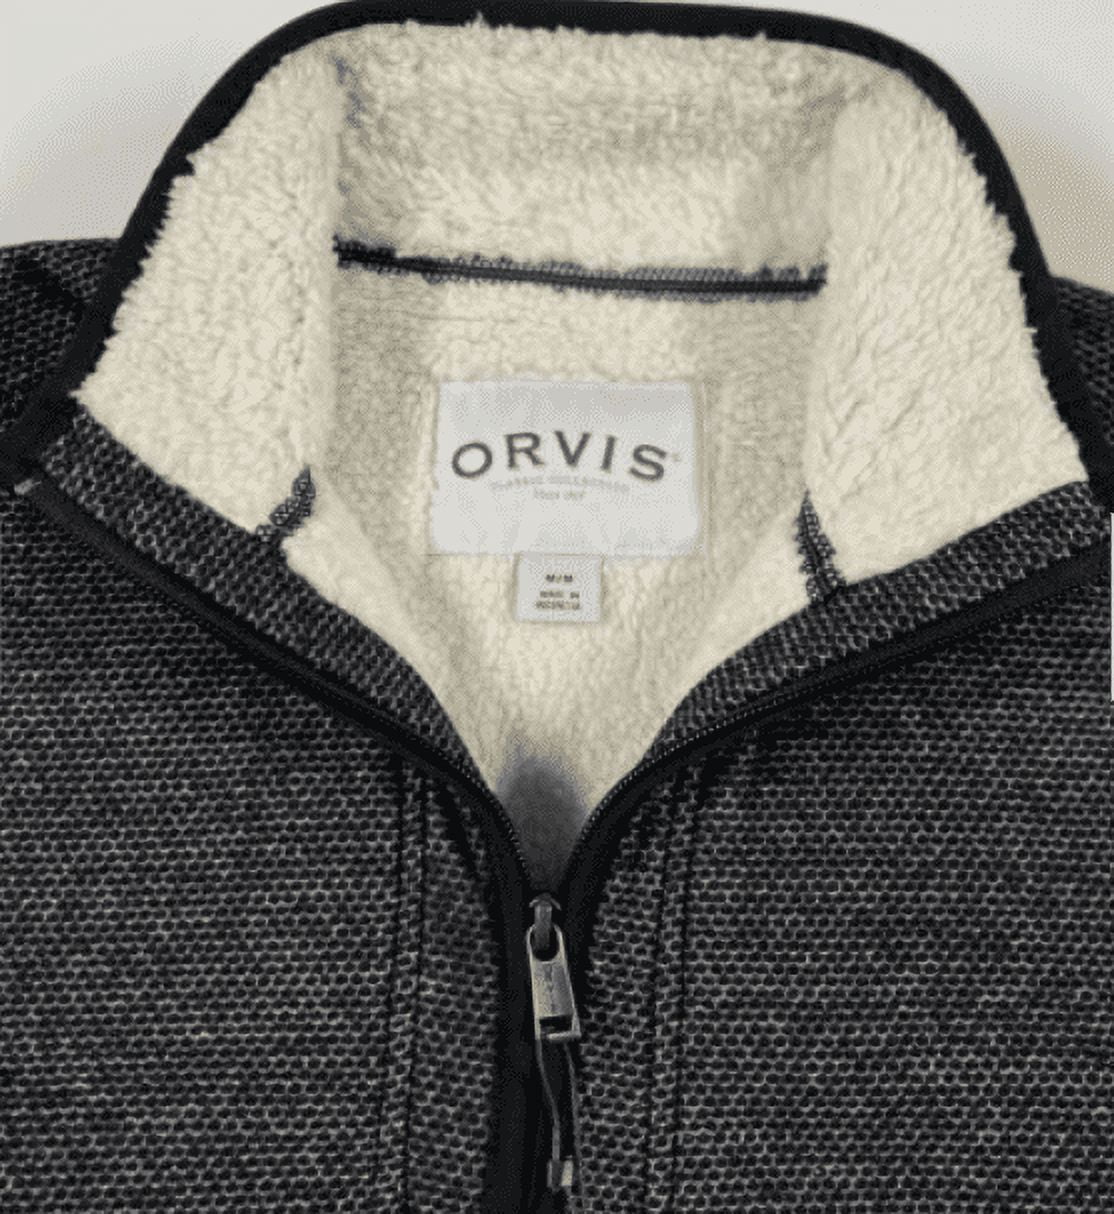 Orvis Men’s 1/4 Zip Fleece Lined Pullover (Medium, Grey)